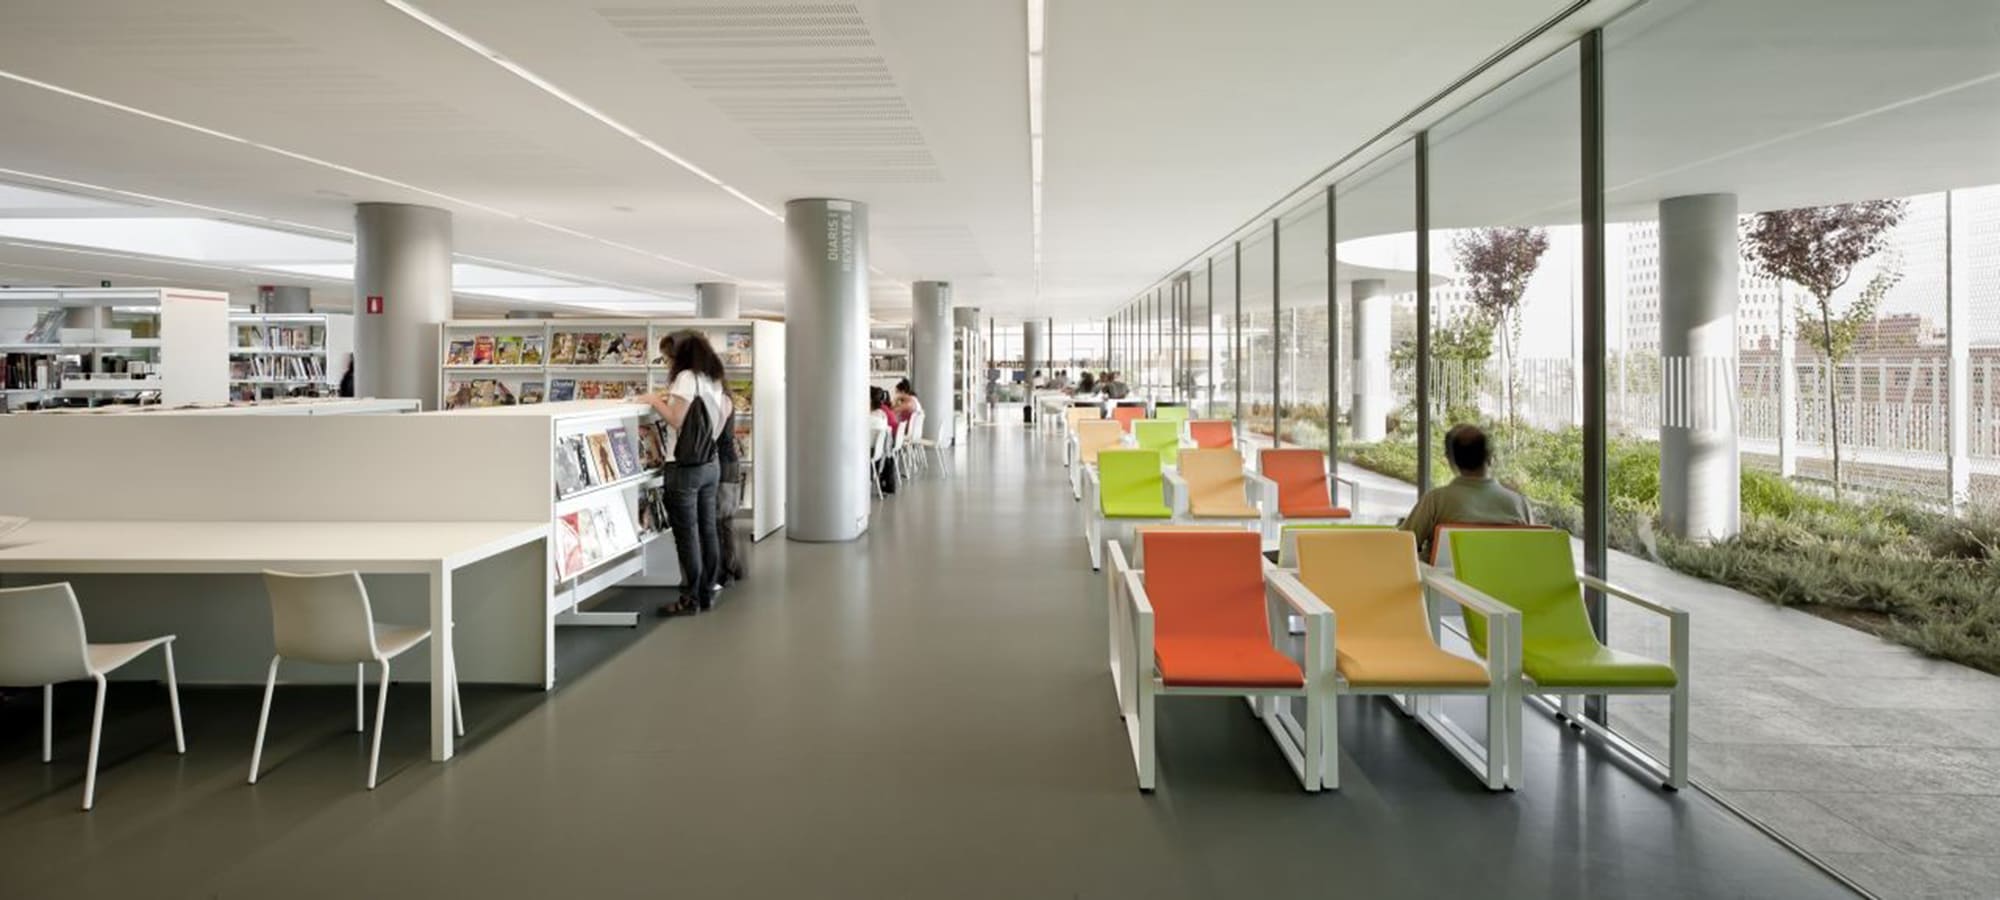 Library in Singuerlin